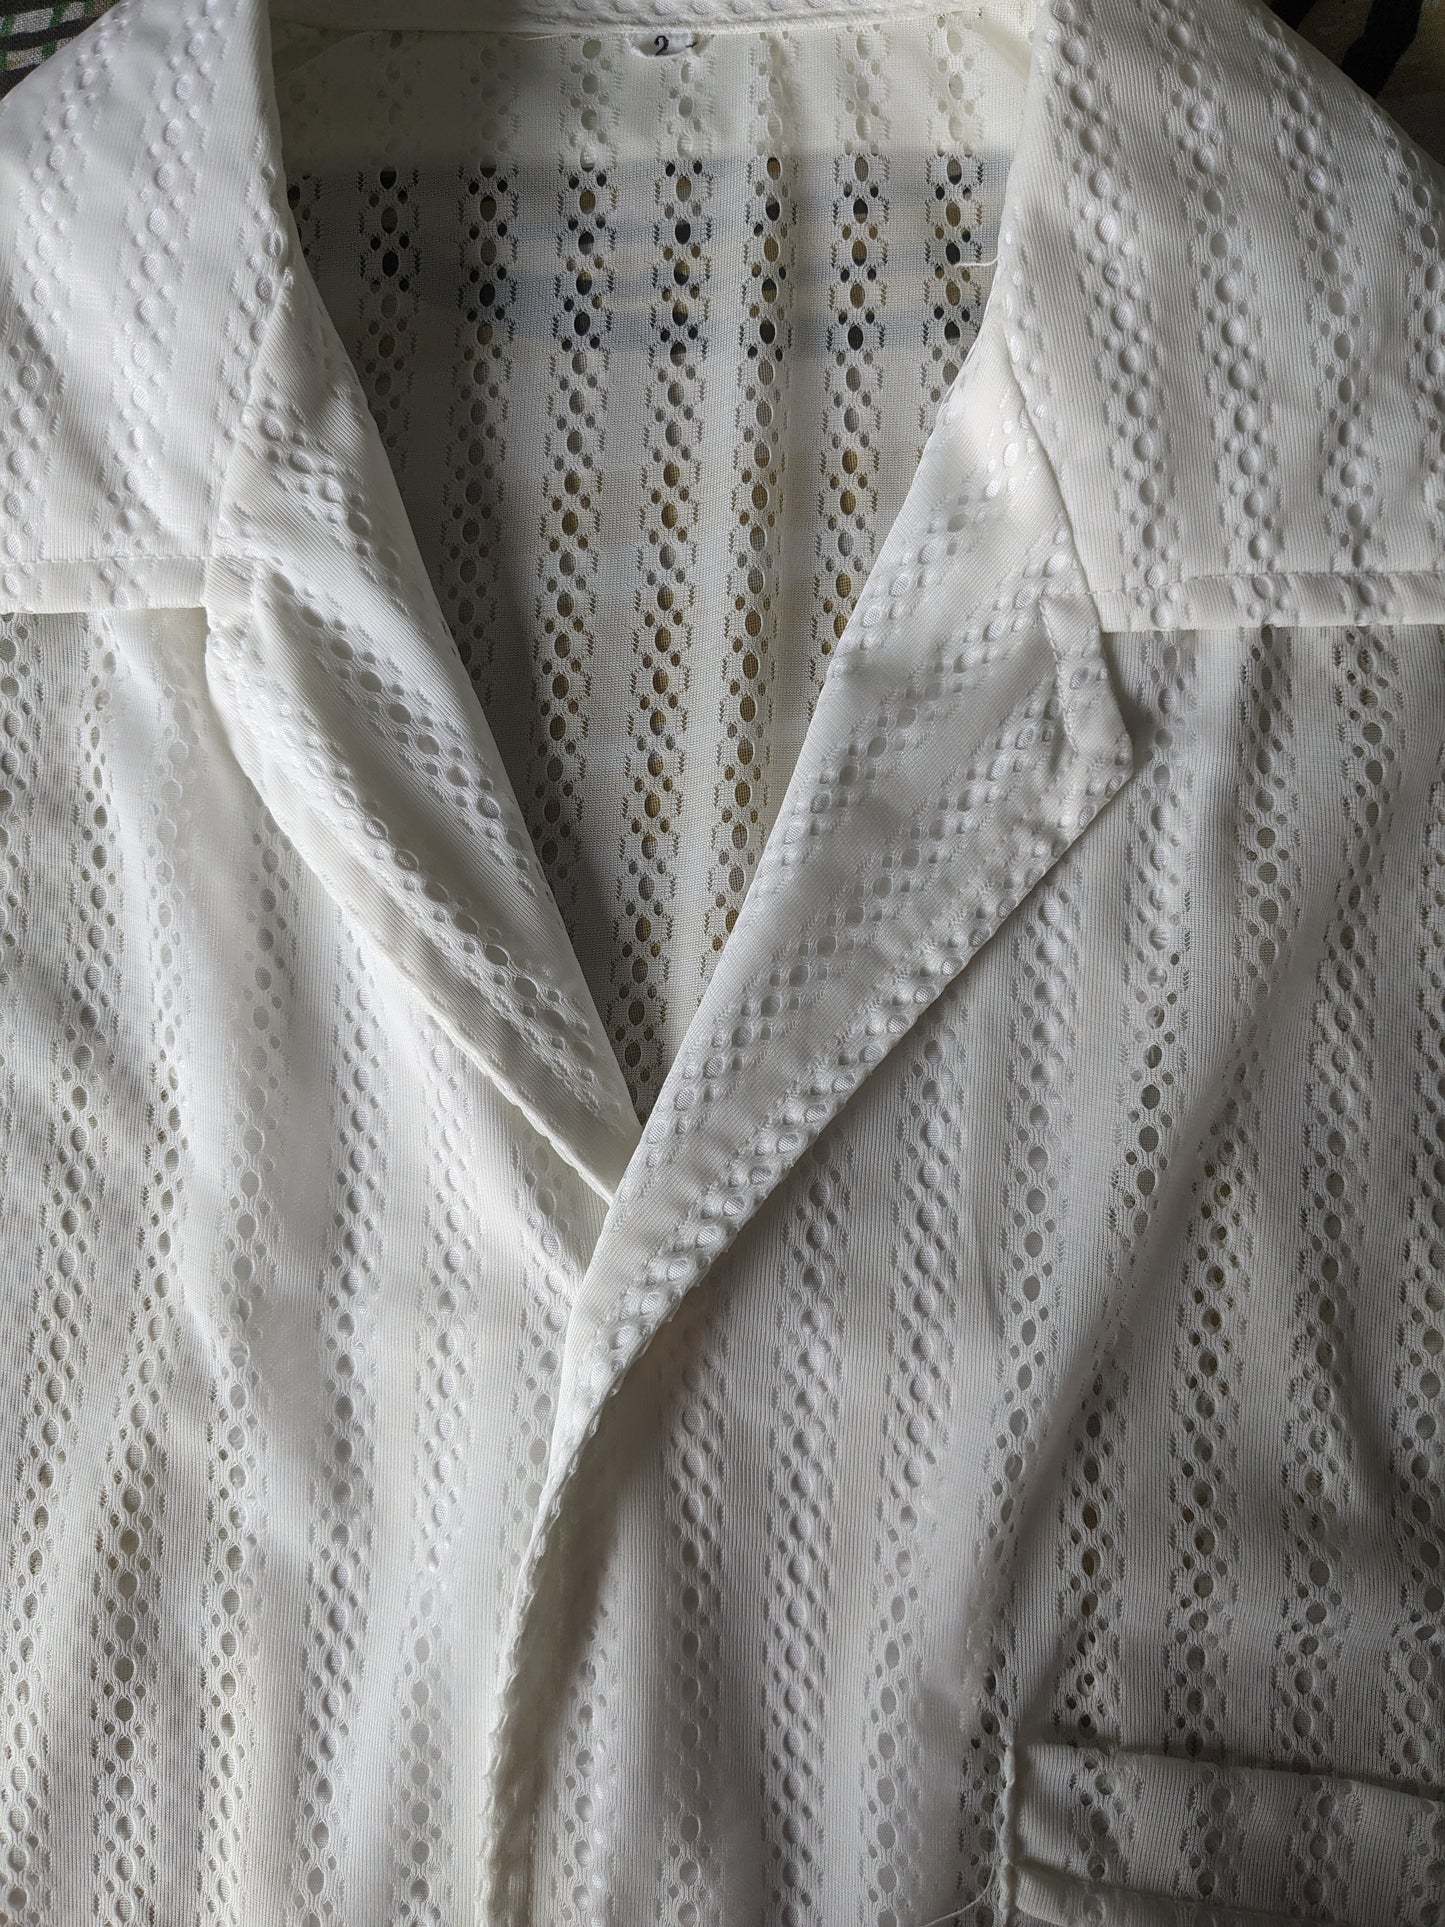 Shelt de chemise vintage des années 70 à manches courtes. Motif transparent / translucide blanc. Taille M.